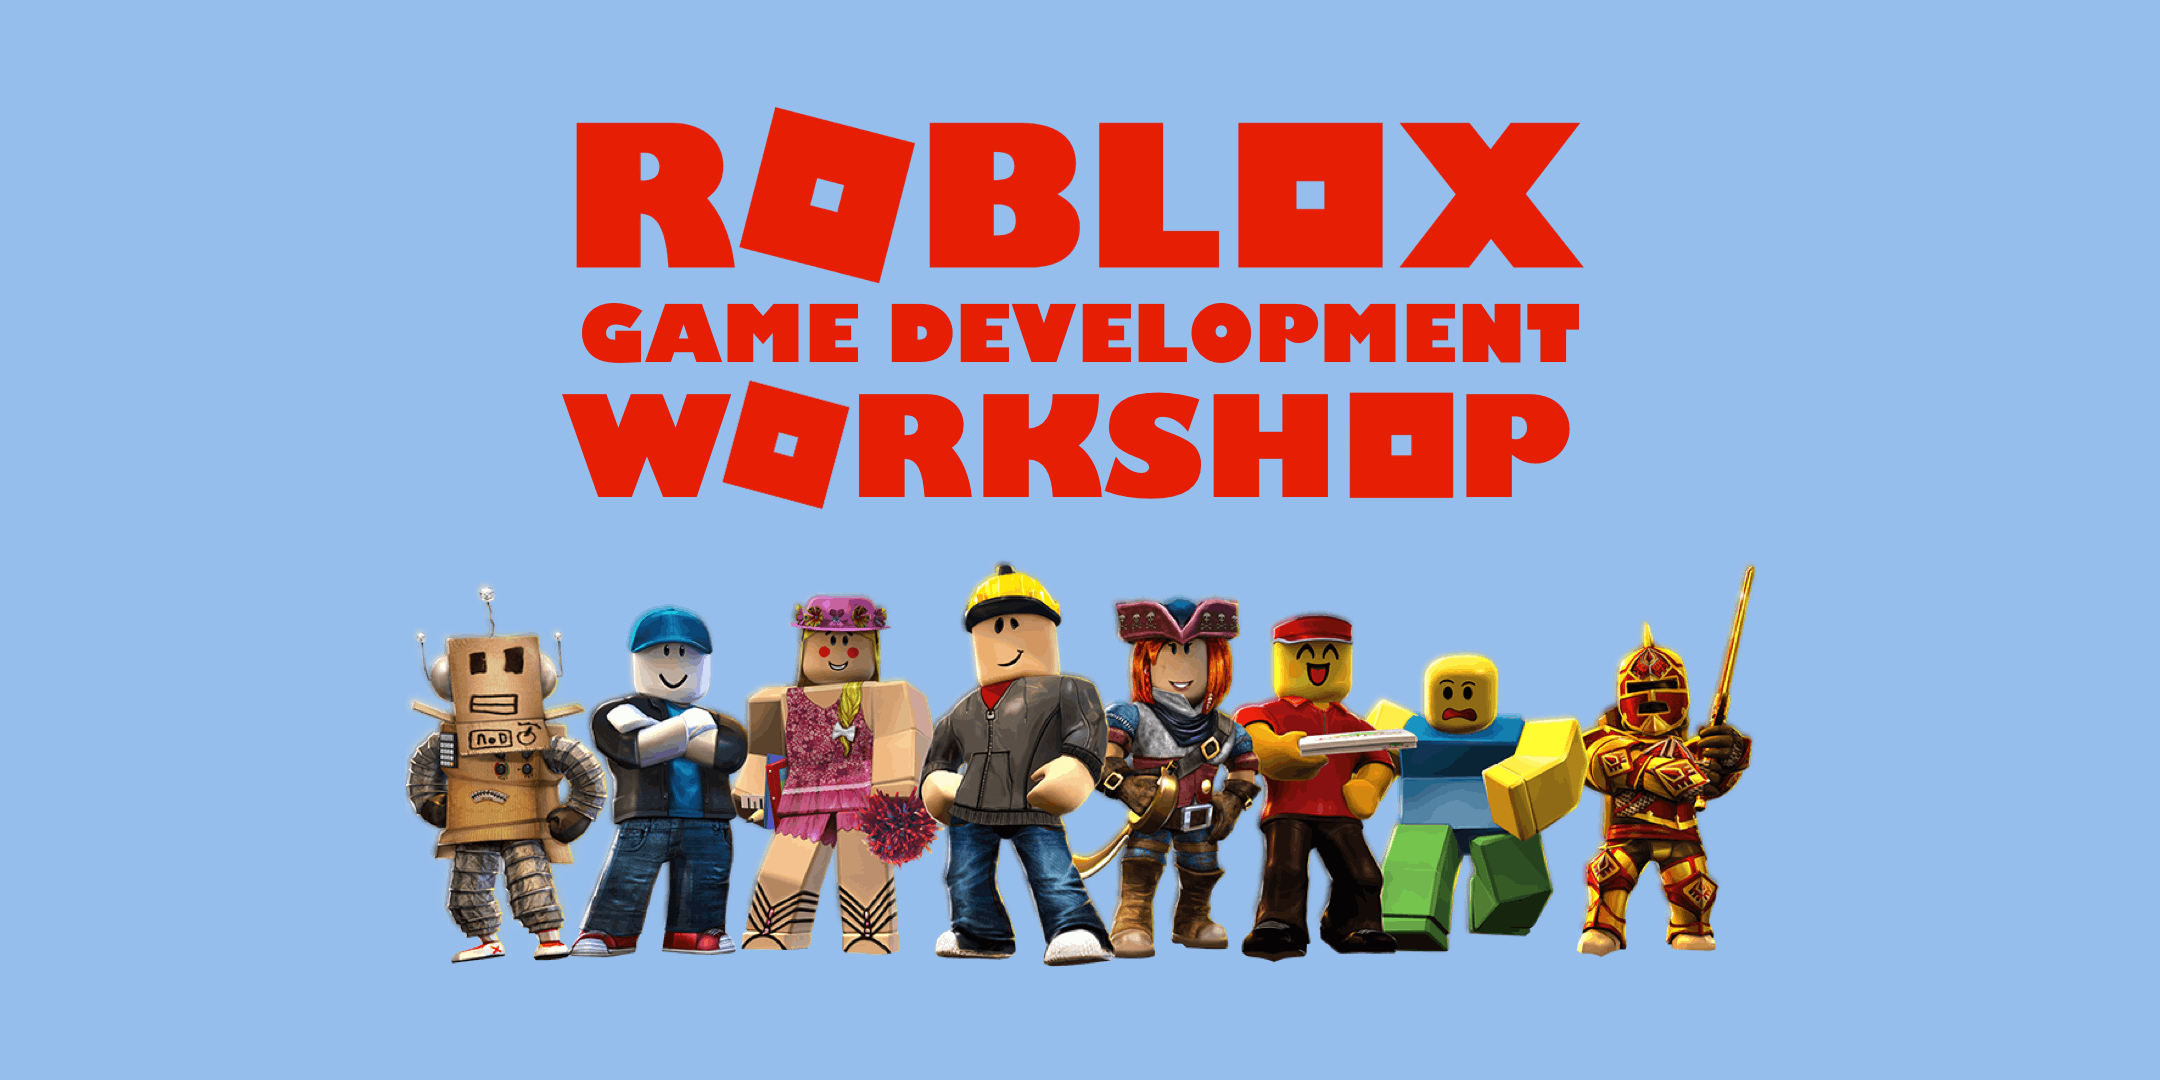 Roblox Game Development Workshop 26 Jan 2019 - roblox error 148